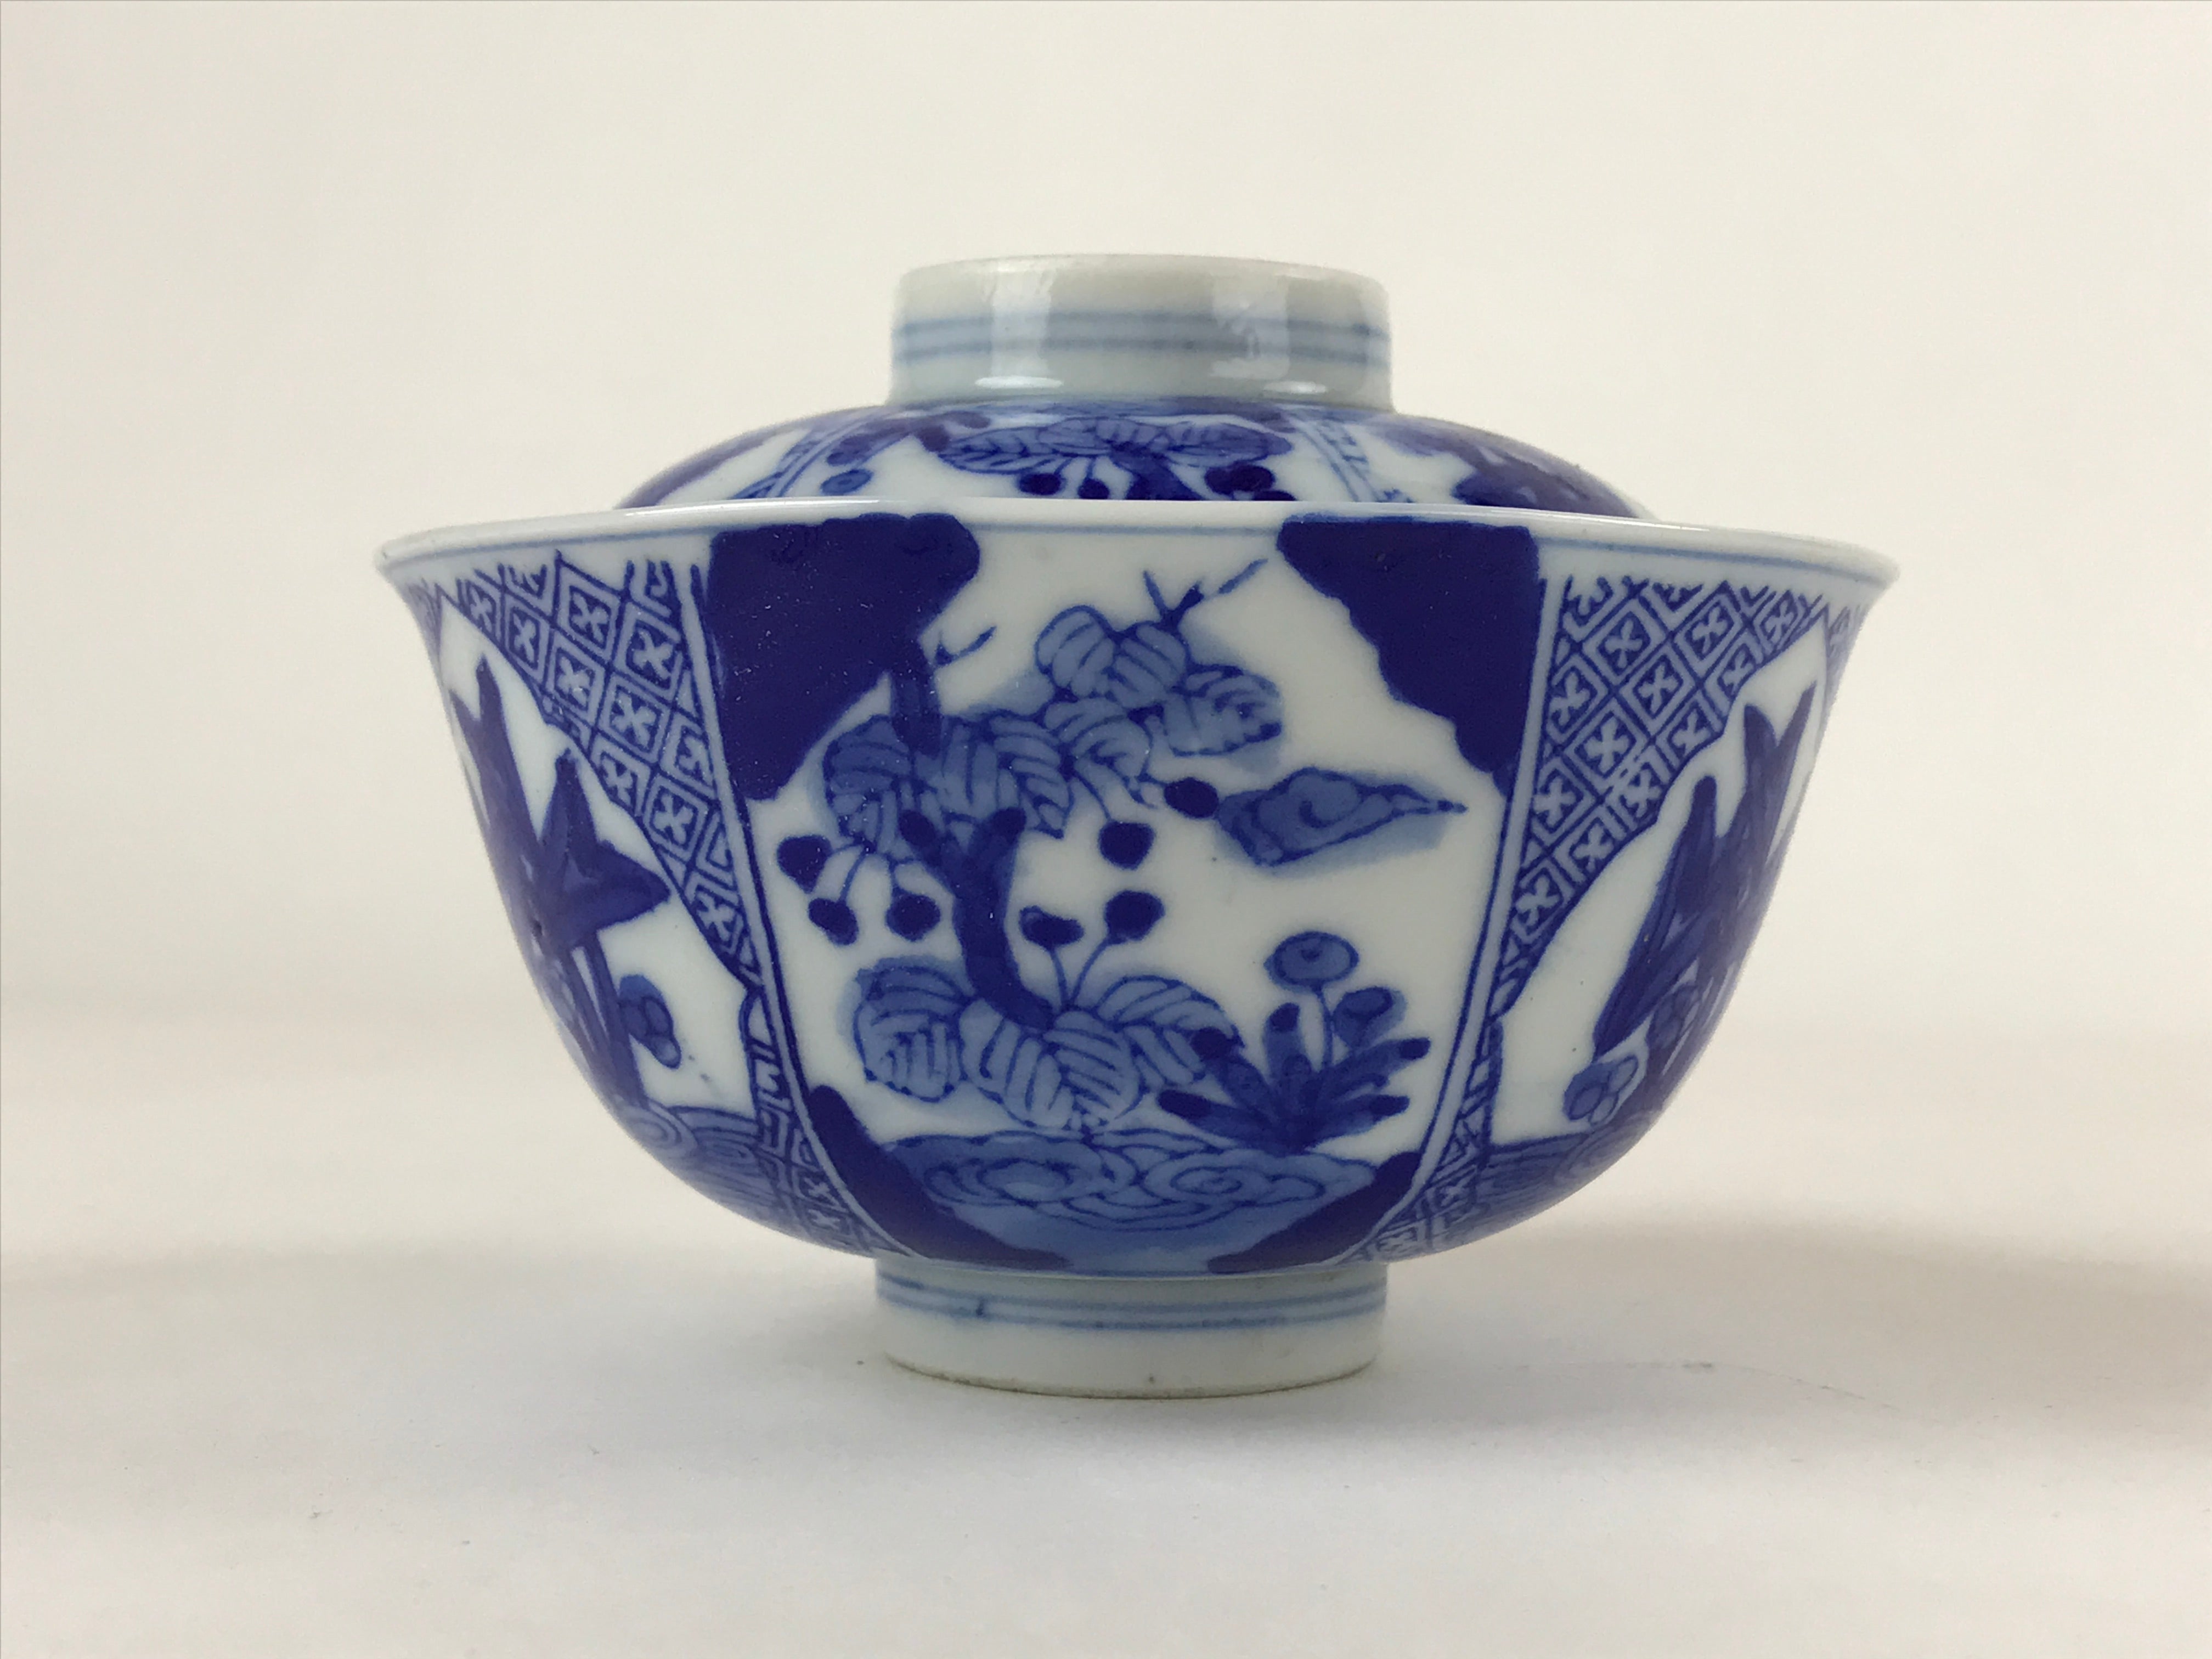 Japanese Ceramic Sometsuke Lidded Bowl Owan Vtg Pottery White Blue Floral PY586